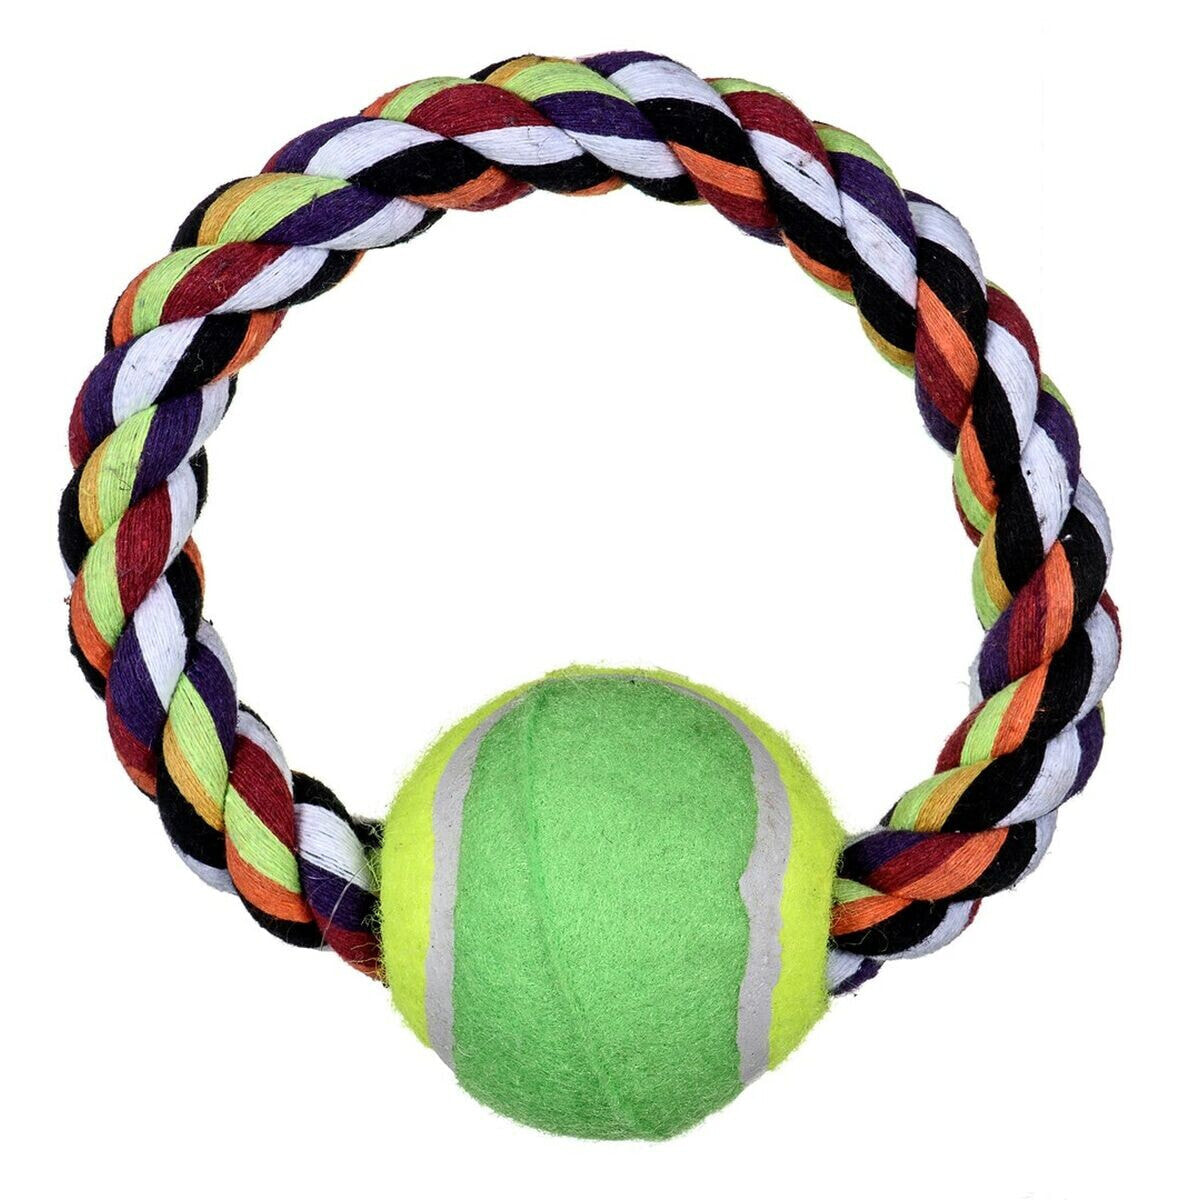 Dog toy Trixie Tennis Multicolour Polyester Cotton